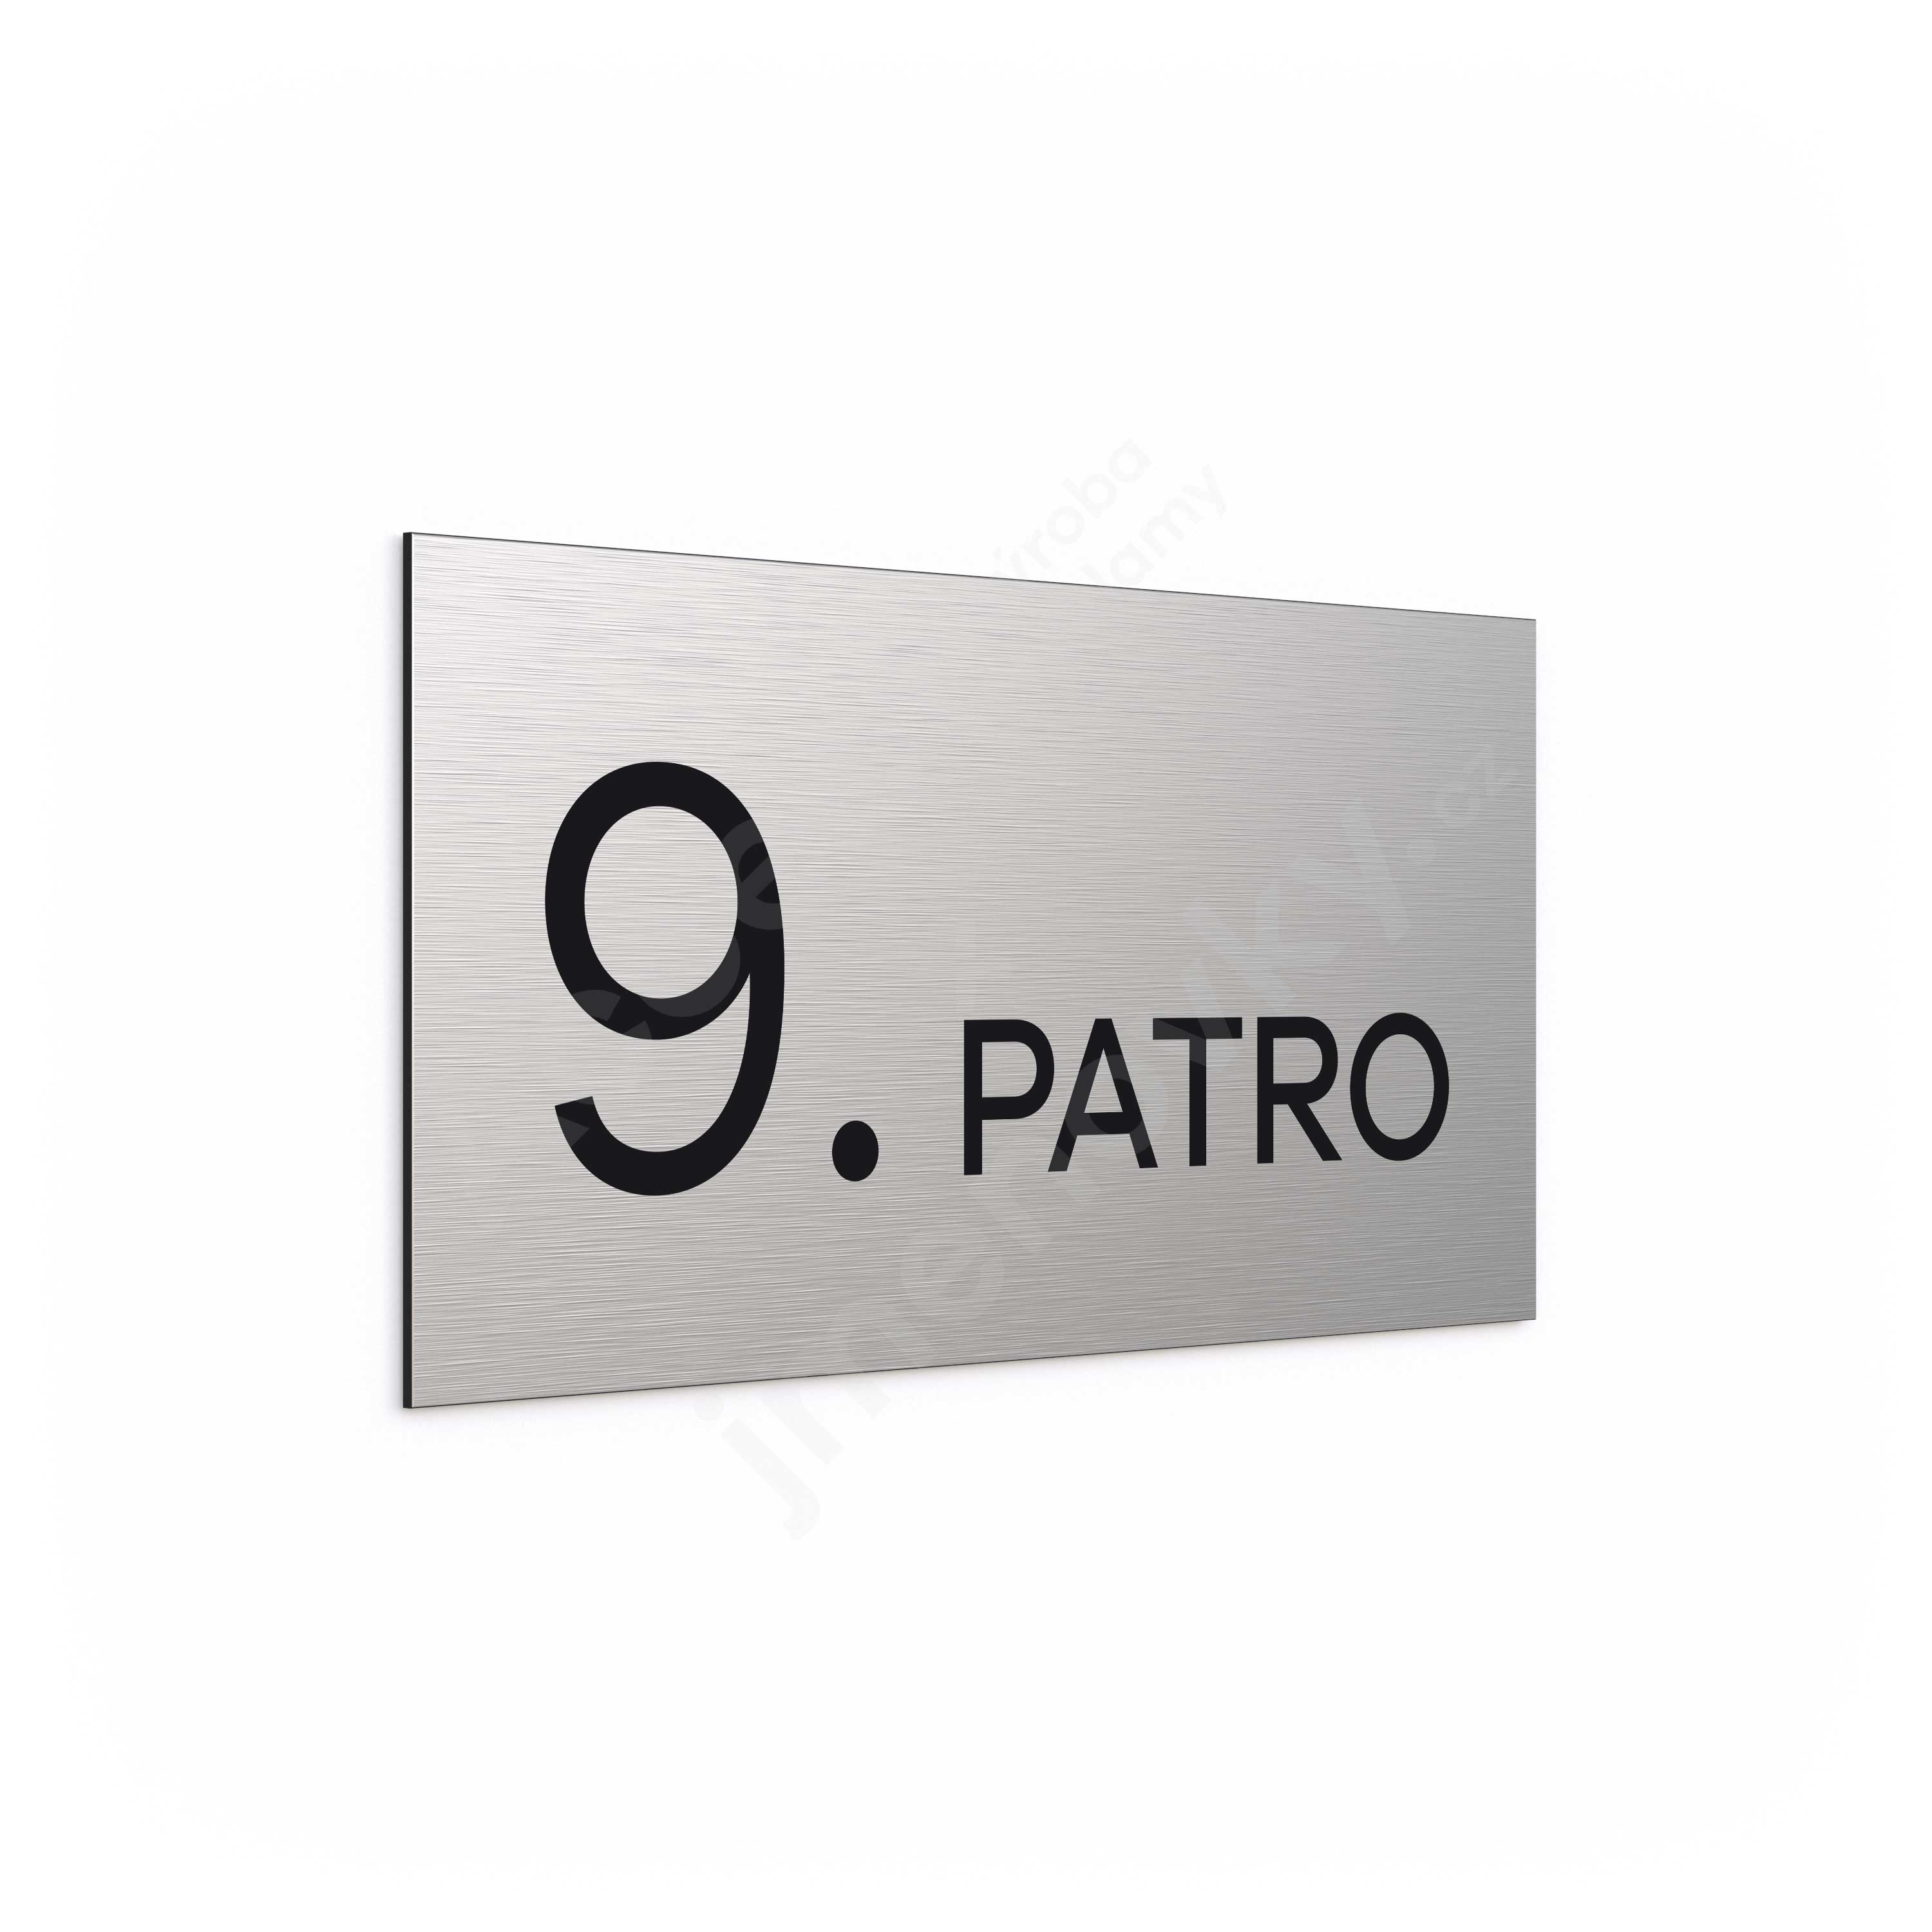 Oznaen podla "9. PATRO" - stbrn tabulka - ern popis